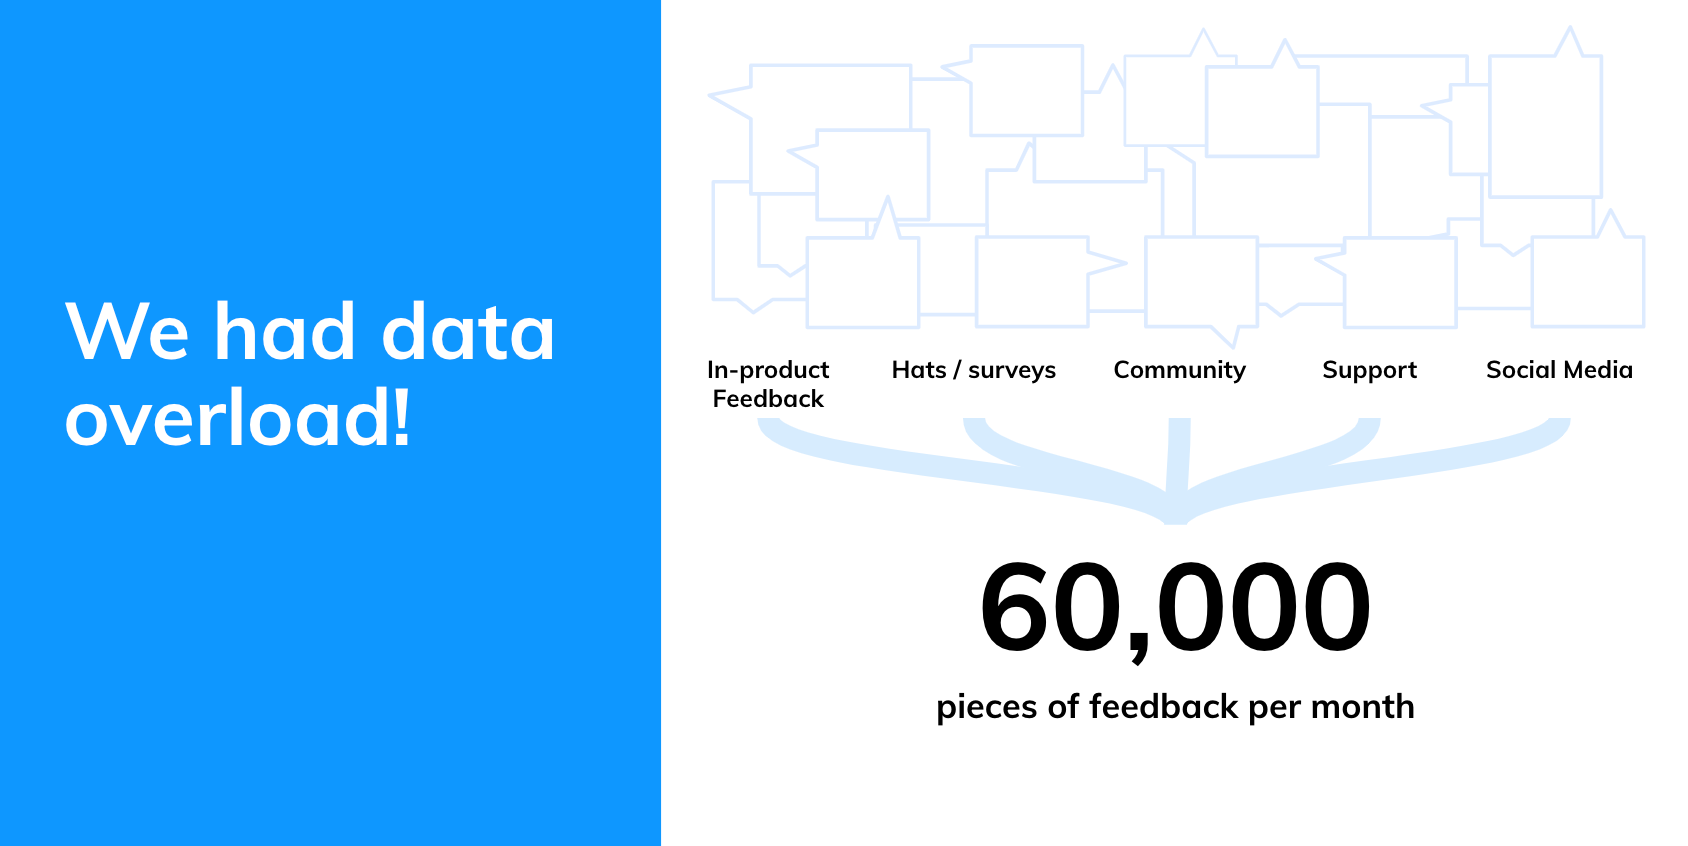 Slide showing Atlassian's data overload